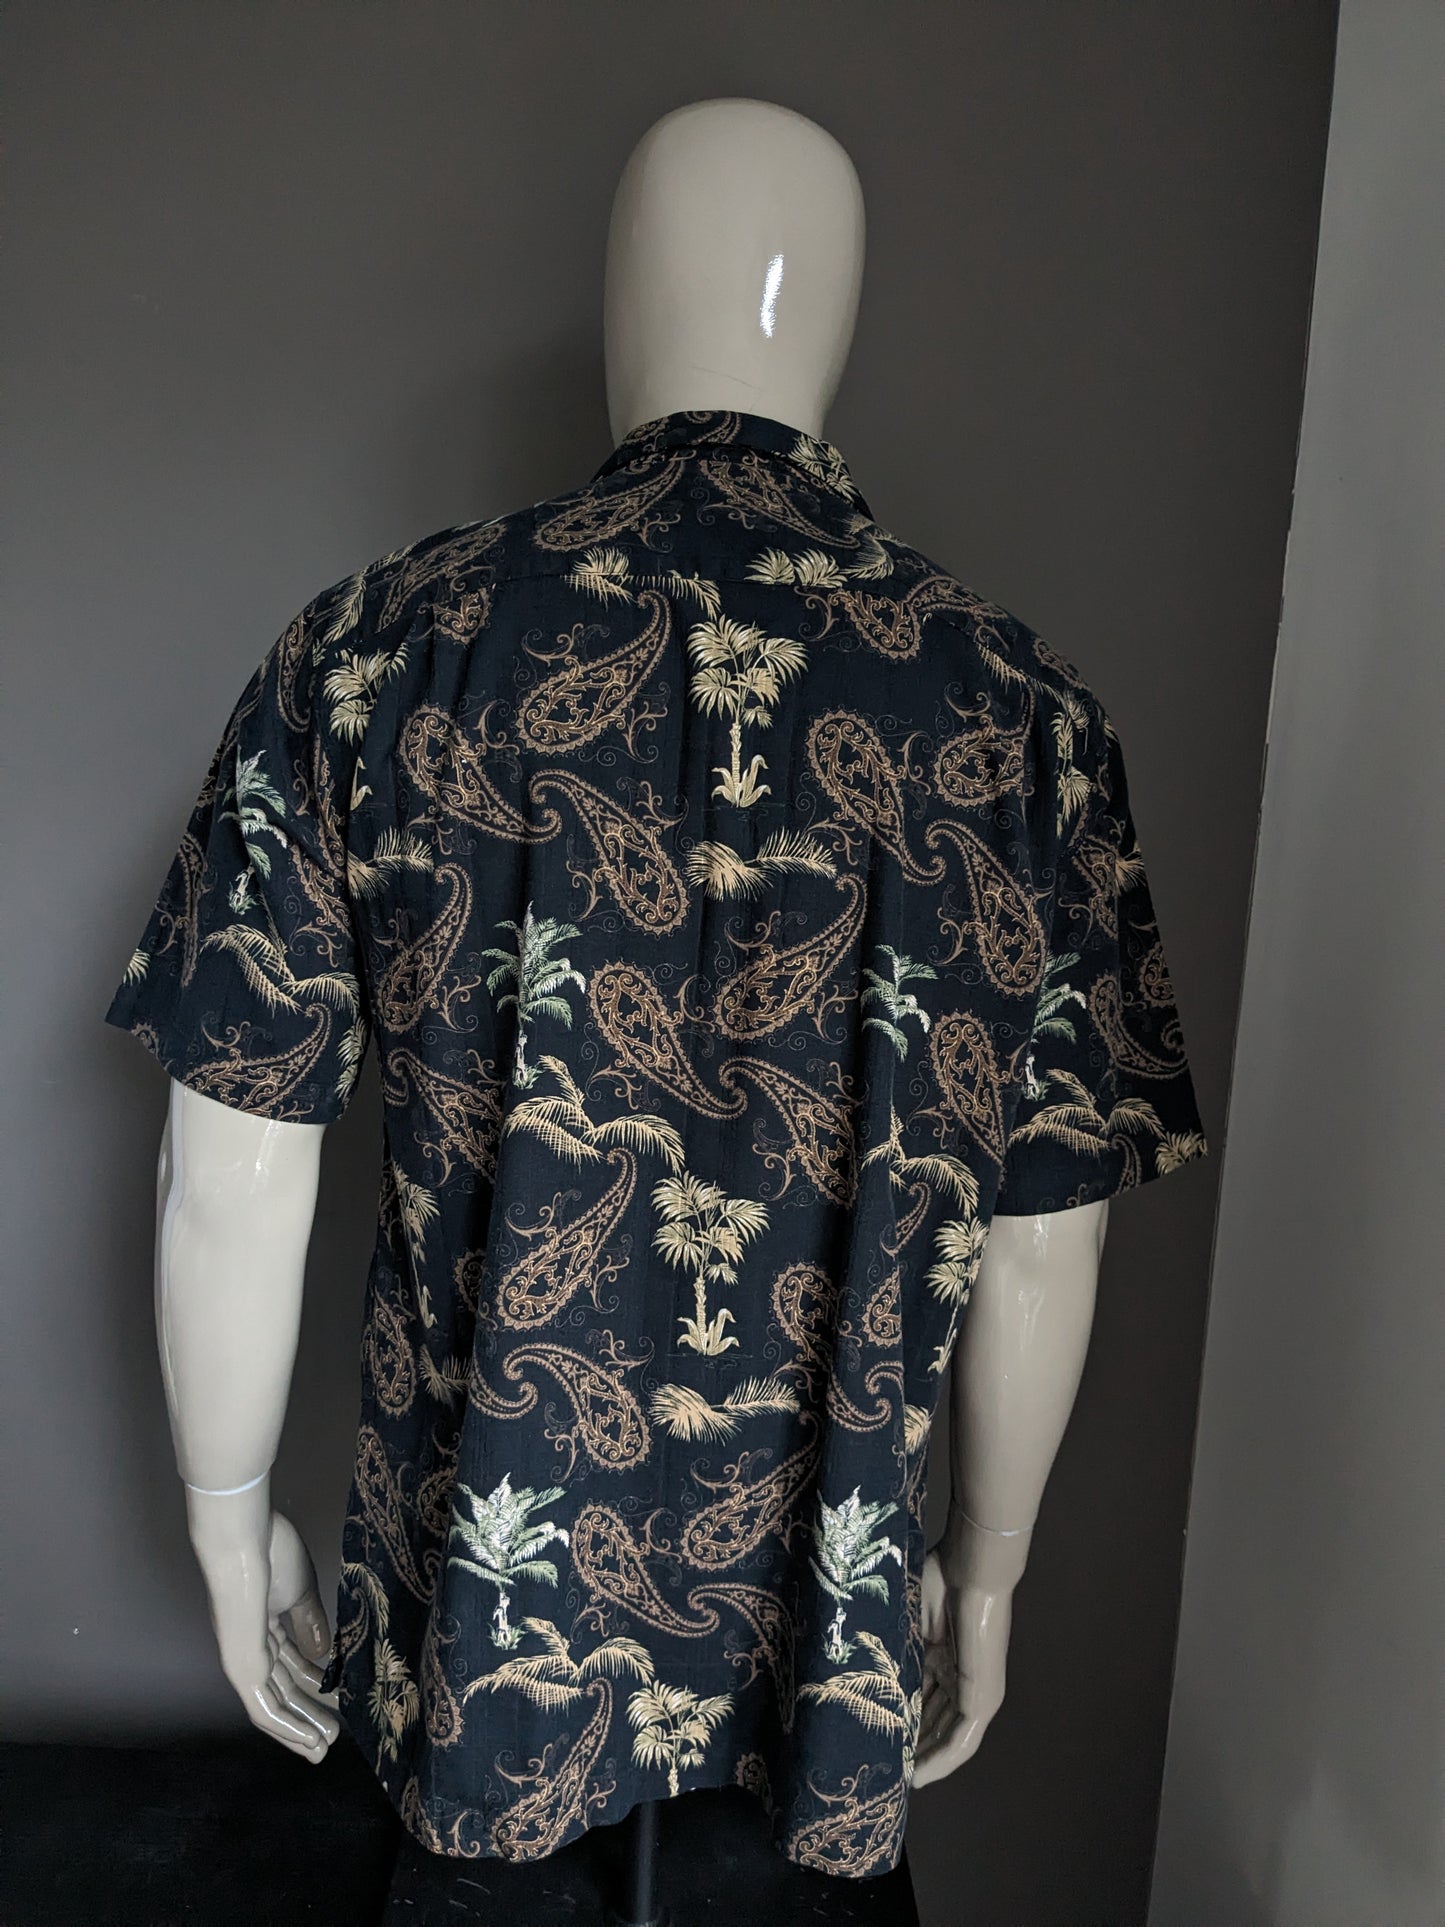 Vintage Clearwater Outfitters Hawaii Camiseta Camiseta corta. Estampado verde marrón negro. Tamaño L / XL. 45% viscosa / rayón